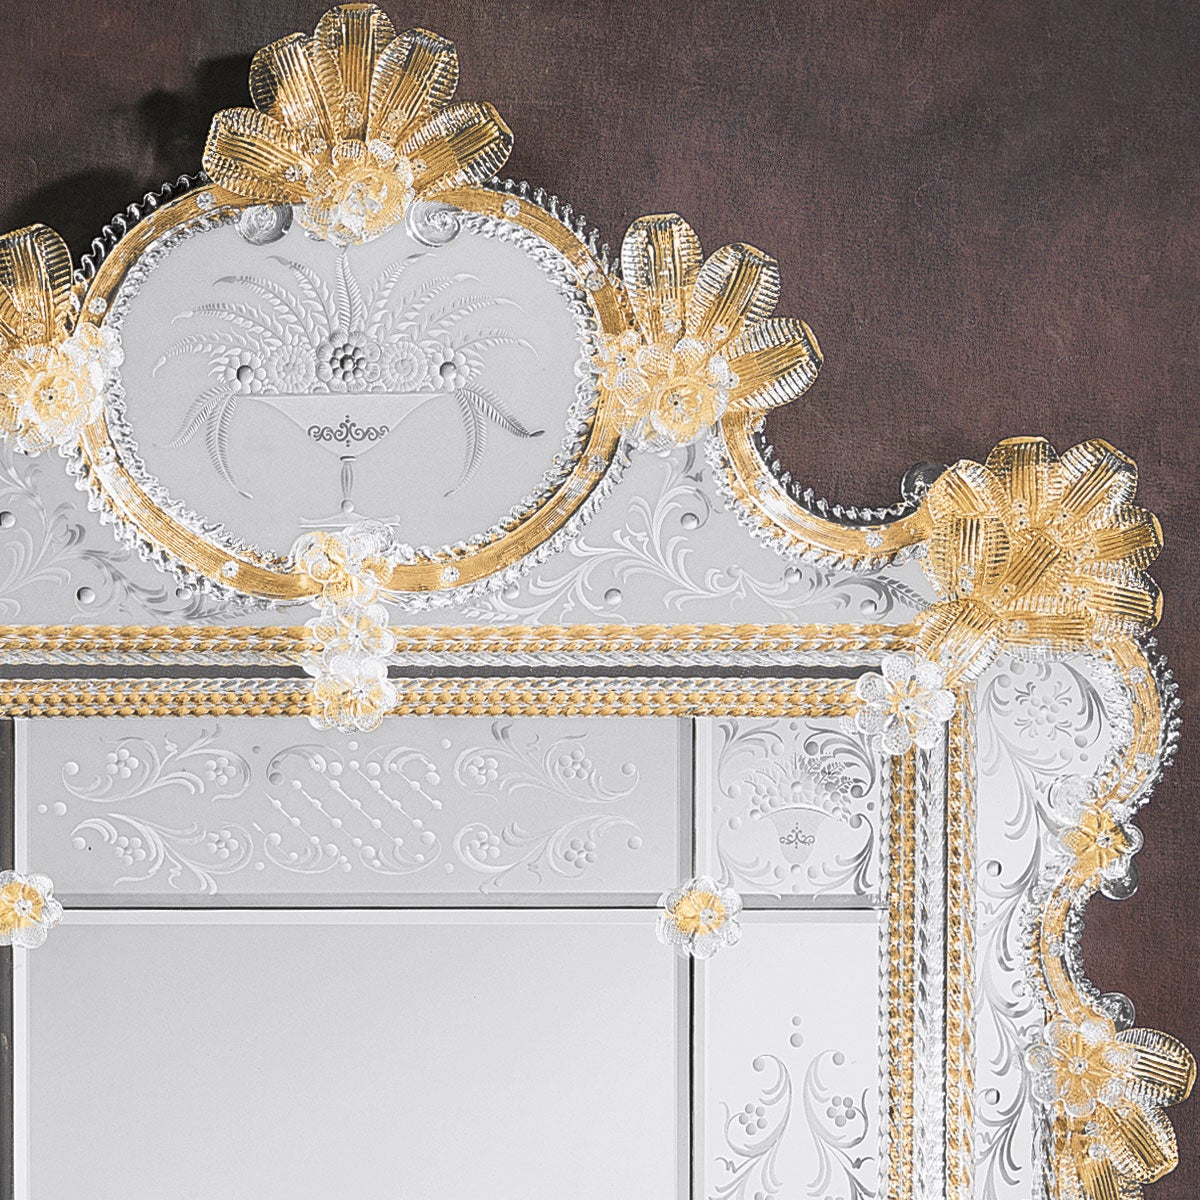 Ein luxuriöser Spiegel im venezianischen Stil aus Murano-Glas.
Hergestellt von den erfahrenen Händen der Murano-Glasmeister, mit einem Rahmen aus Kristallstäben und Locken auf einem goldenen Hintergrund mit Verzierungen aus Blättern, Rosen und